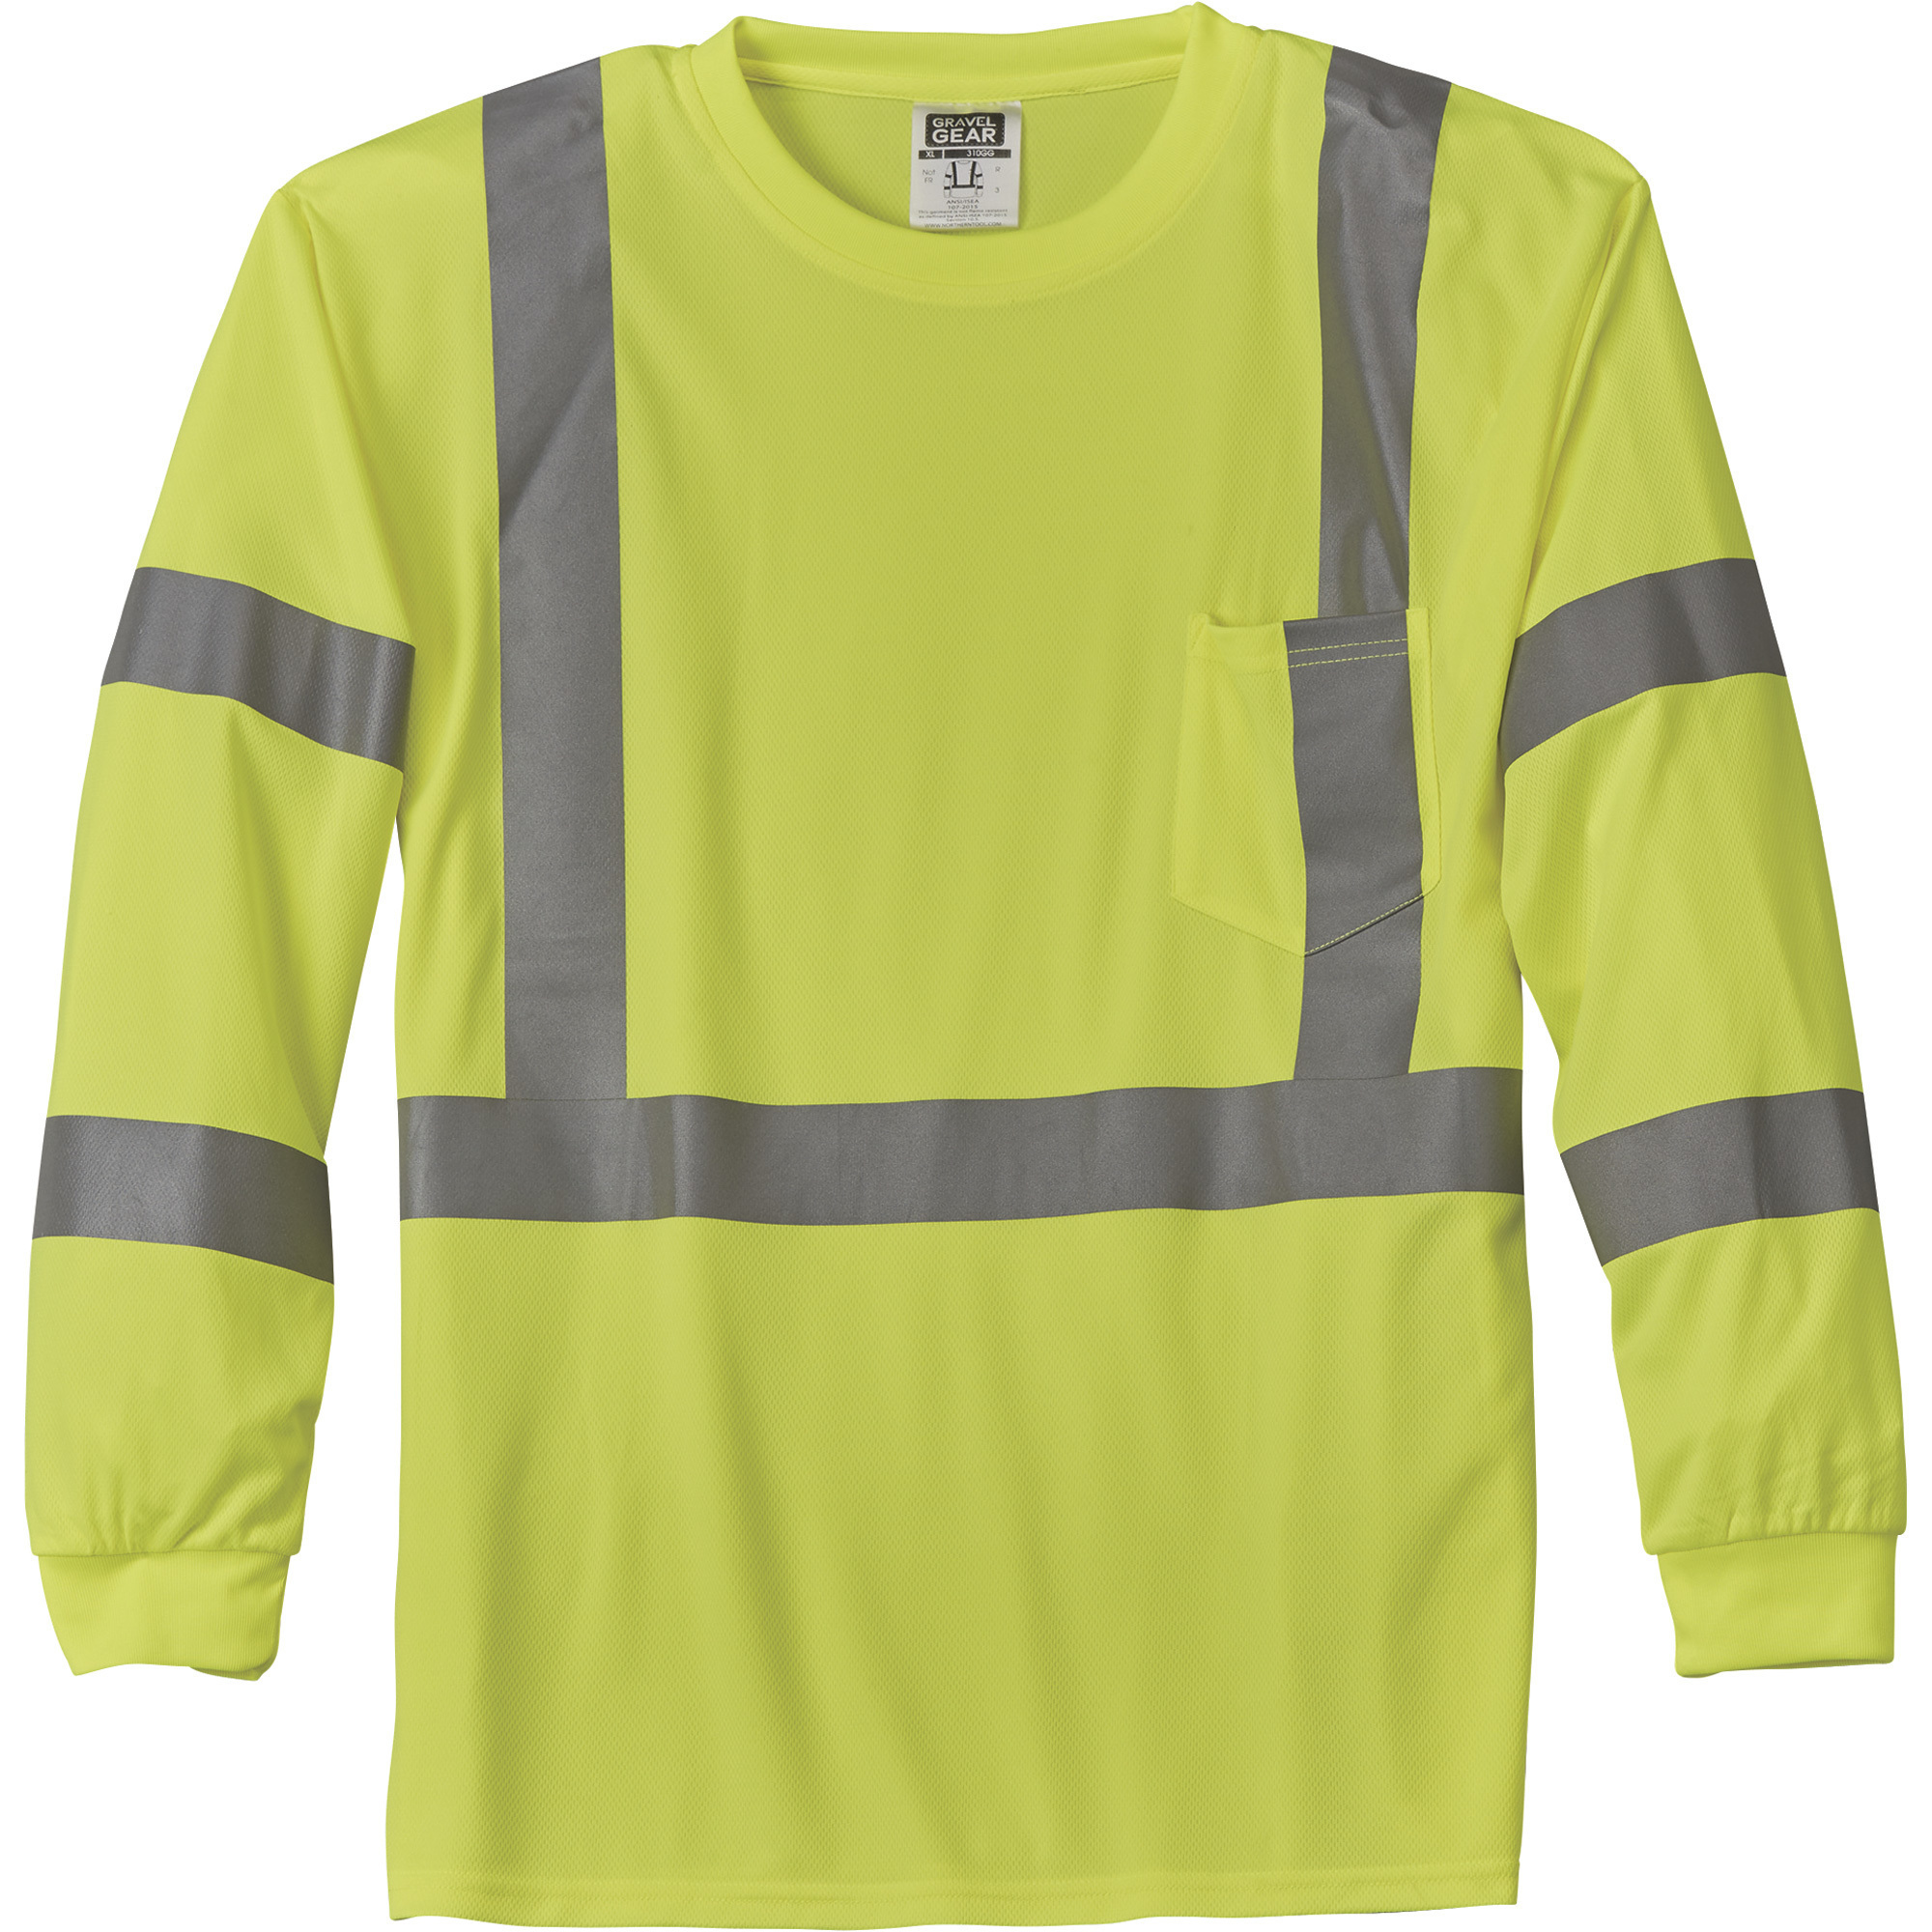 Gravel Gear HV Menâs Class 3 High Visibility High-Performance Long Sleeve T-Shirt â Lime, XL